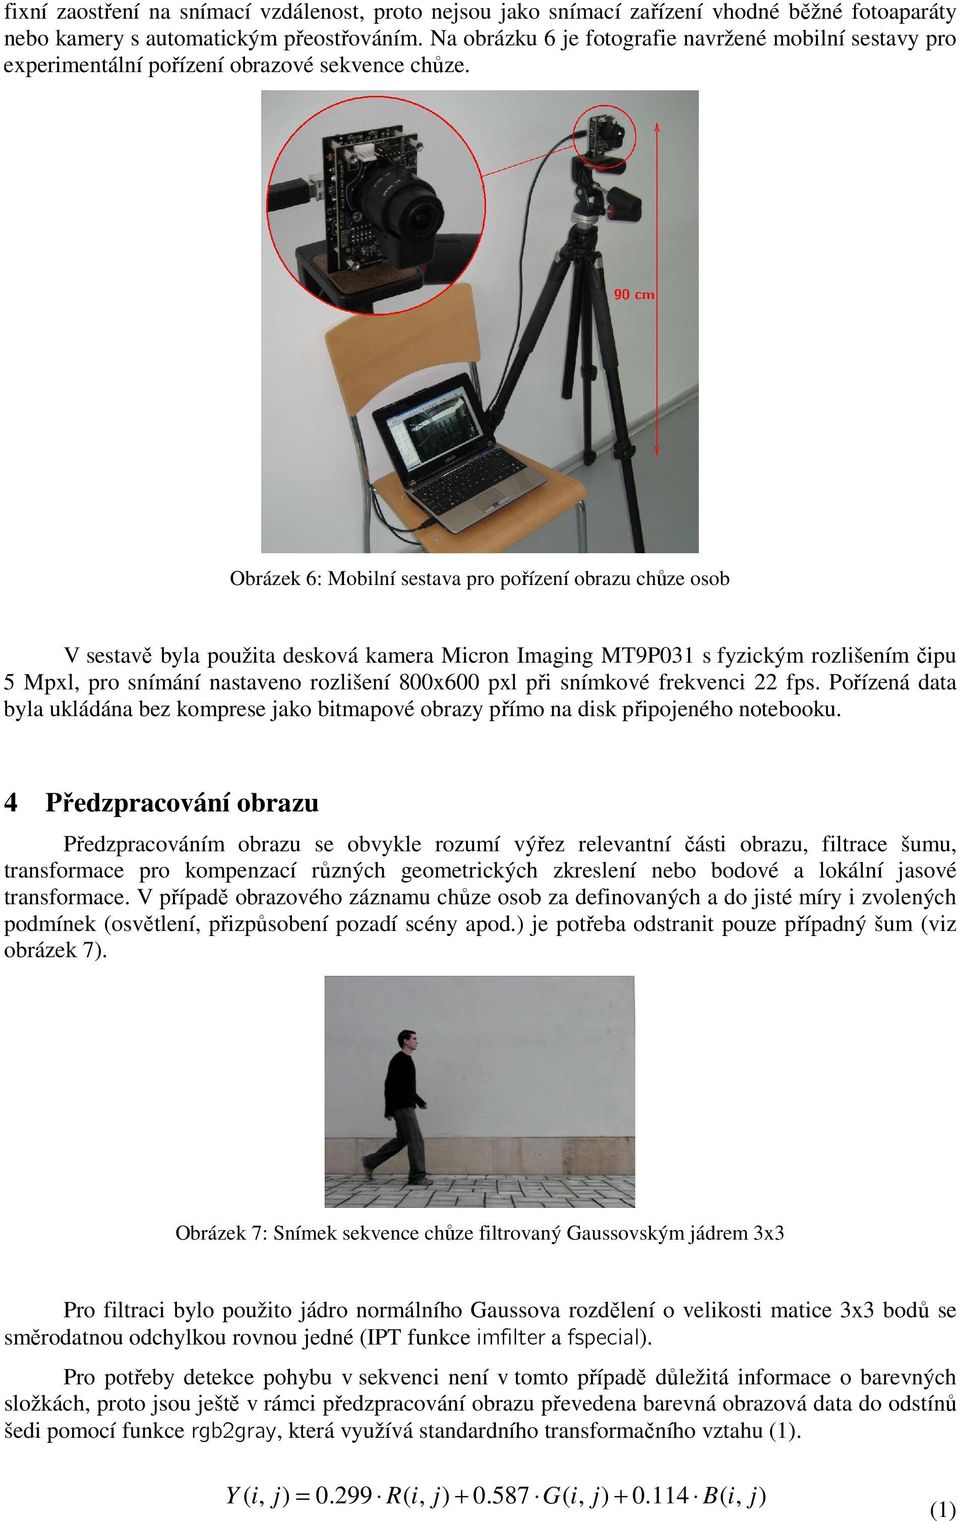 Obrázek 6: Mobilní sestava pro pořízení obrazu chůze osob V sestavě byla použita desková kamera Micron Imaging MT9P3 s fyzickým rozlišením čipu 5 Mpxl, pro snímání nastaveno rozlišení 8x6 pxl při